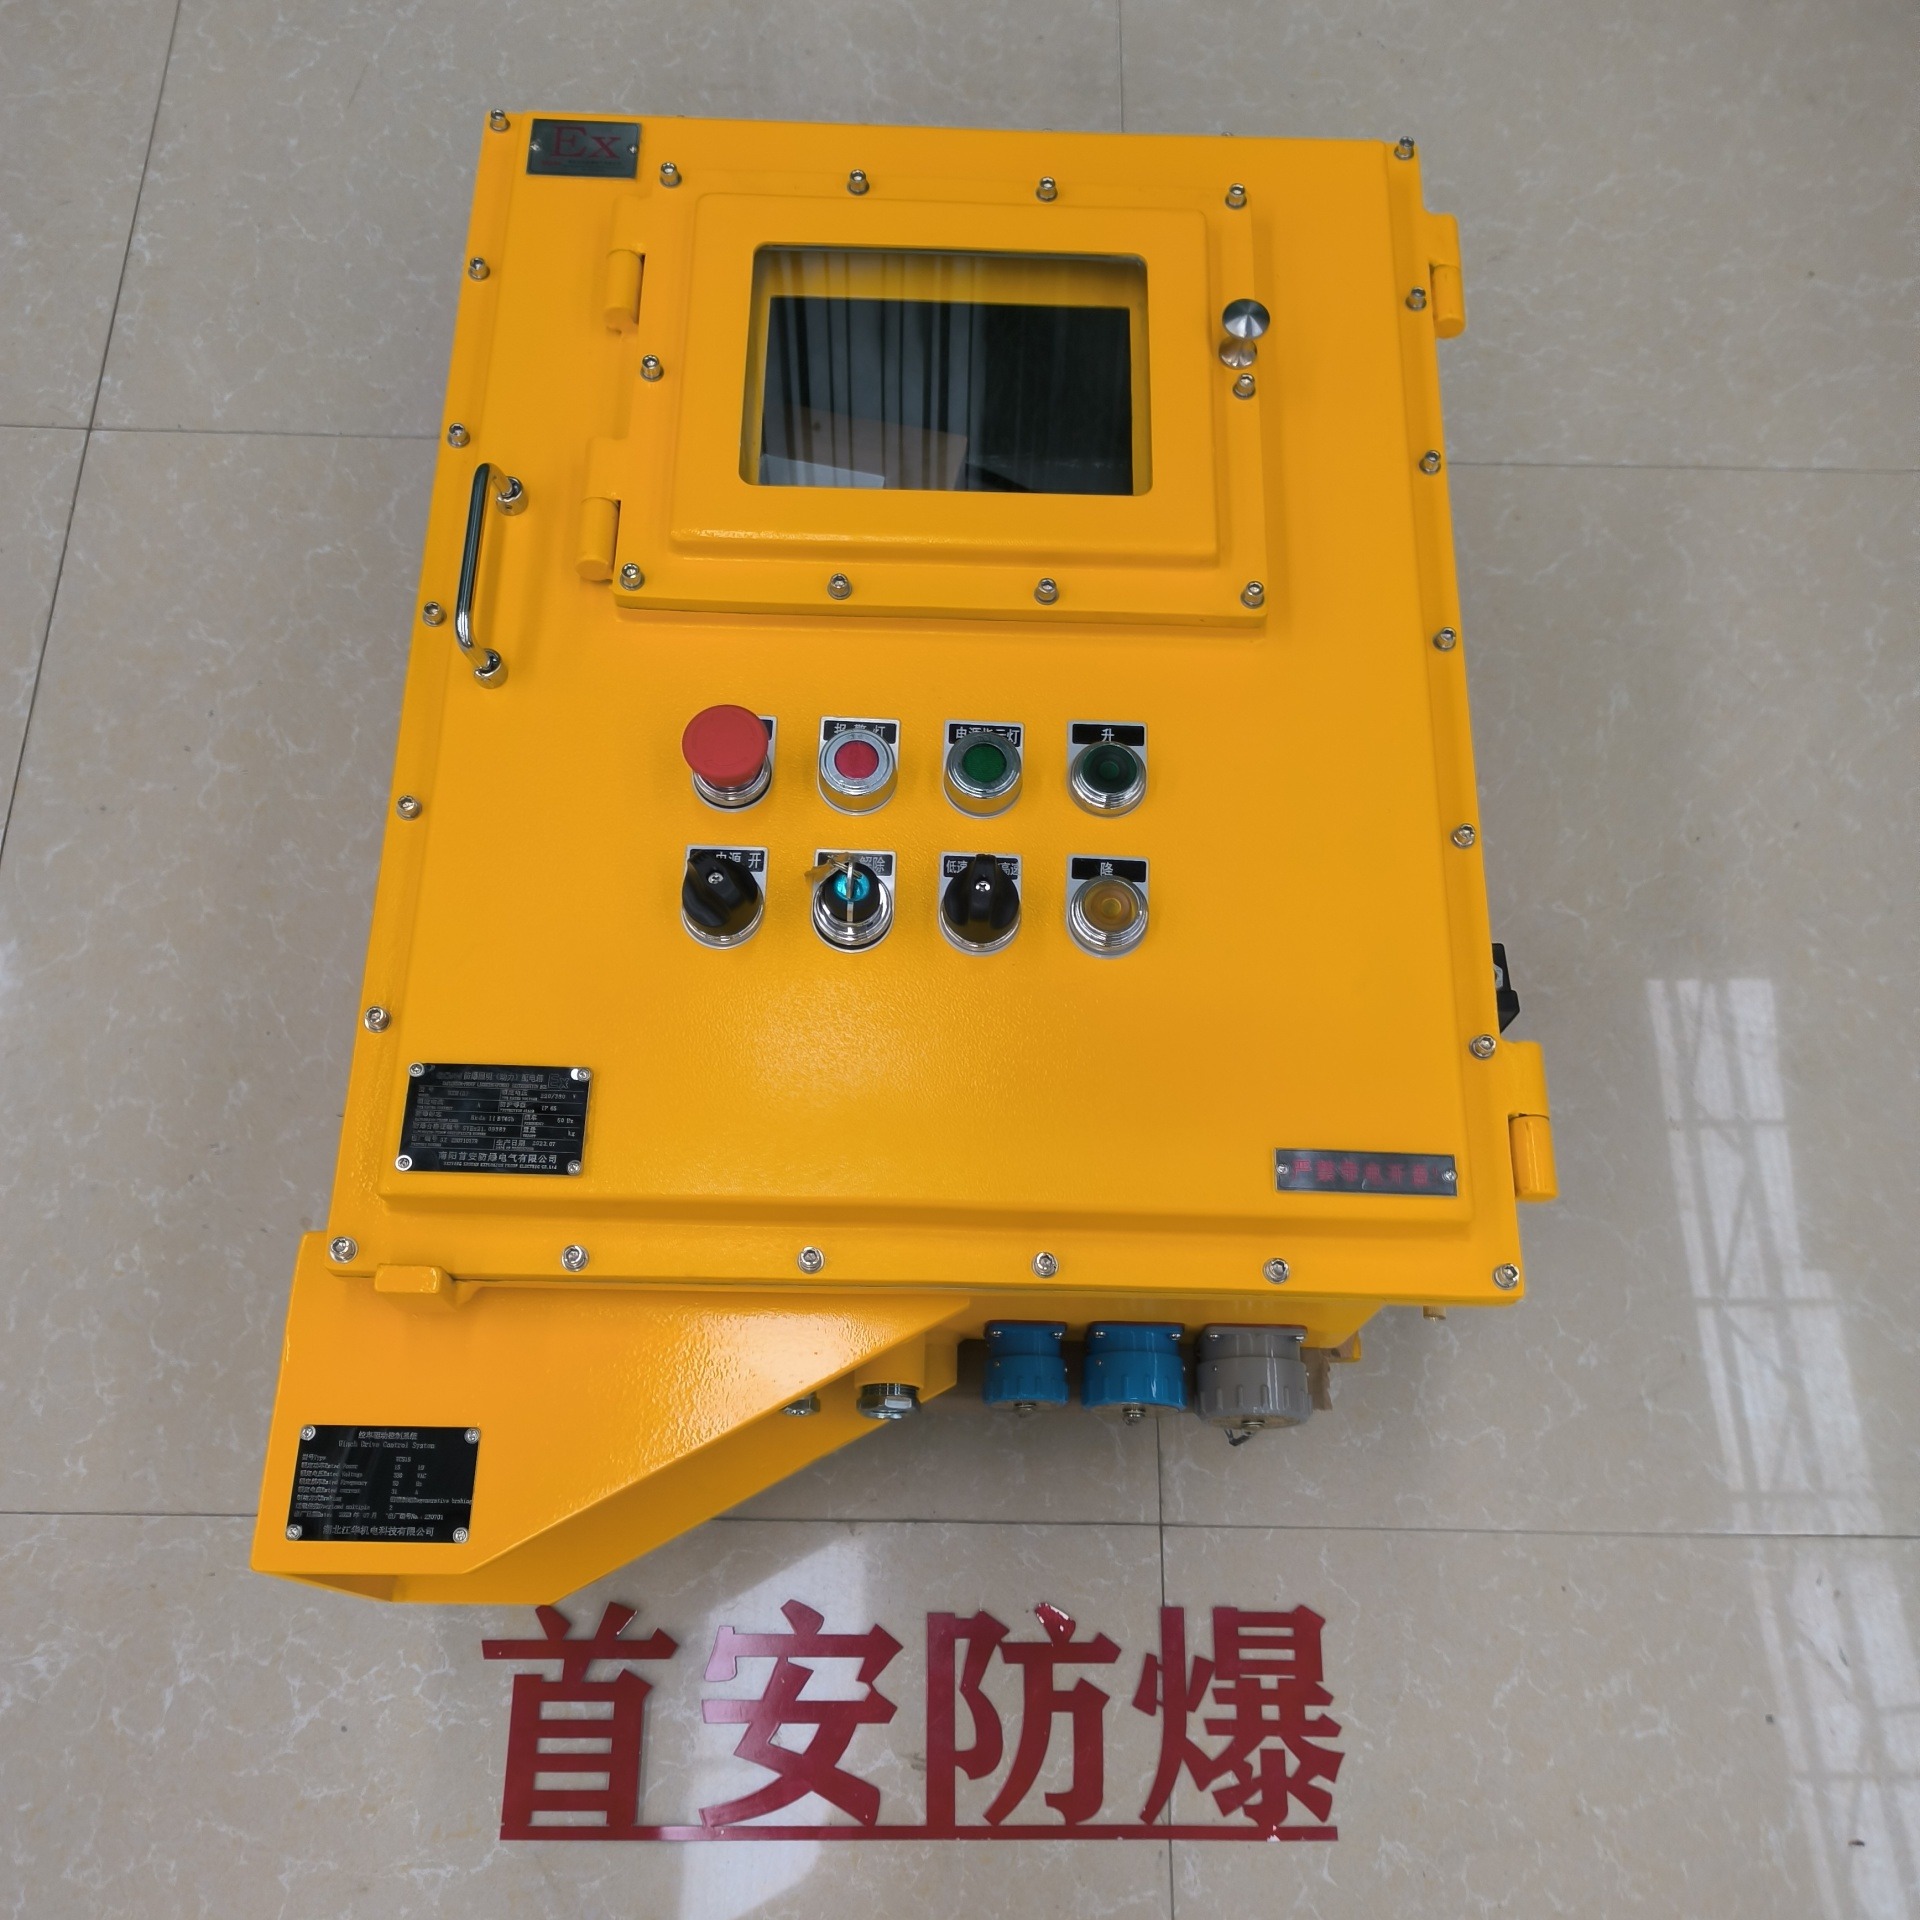 防爆温控箱 电伴热系统防爆控制箱 滁州防爆控制柜图片